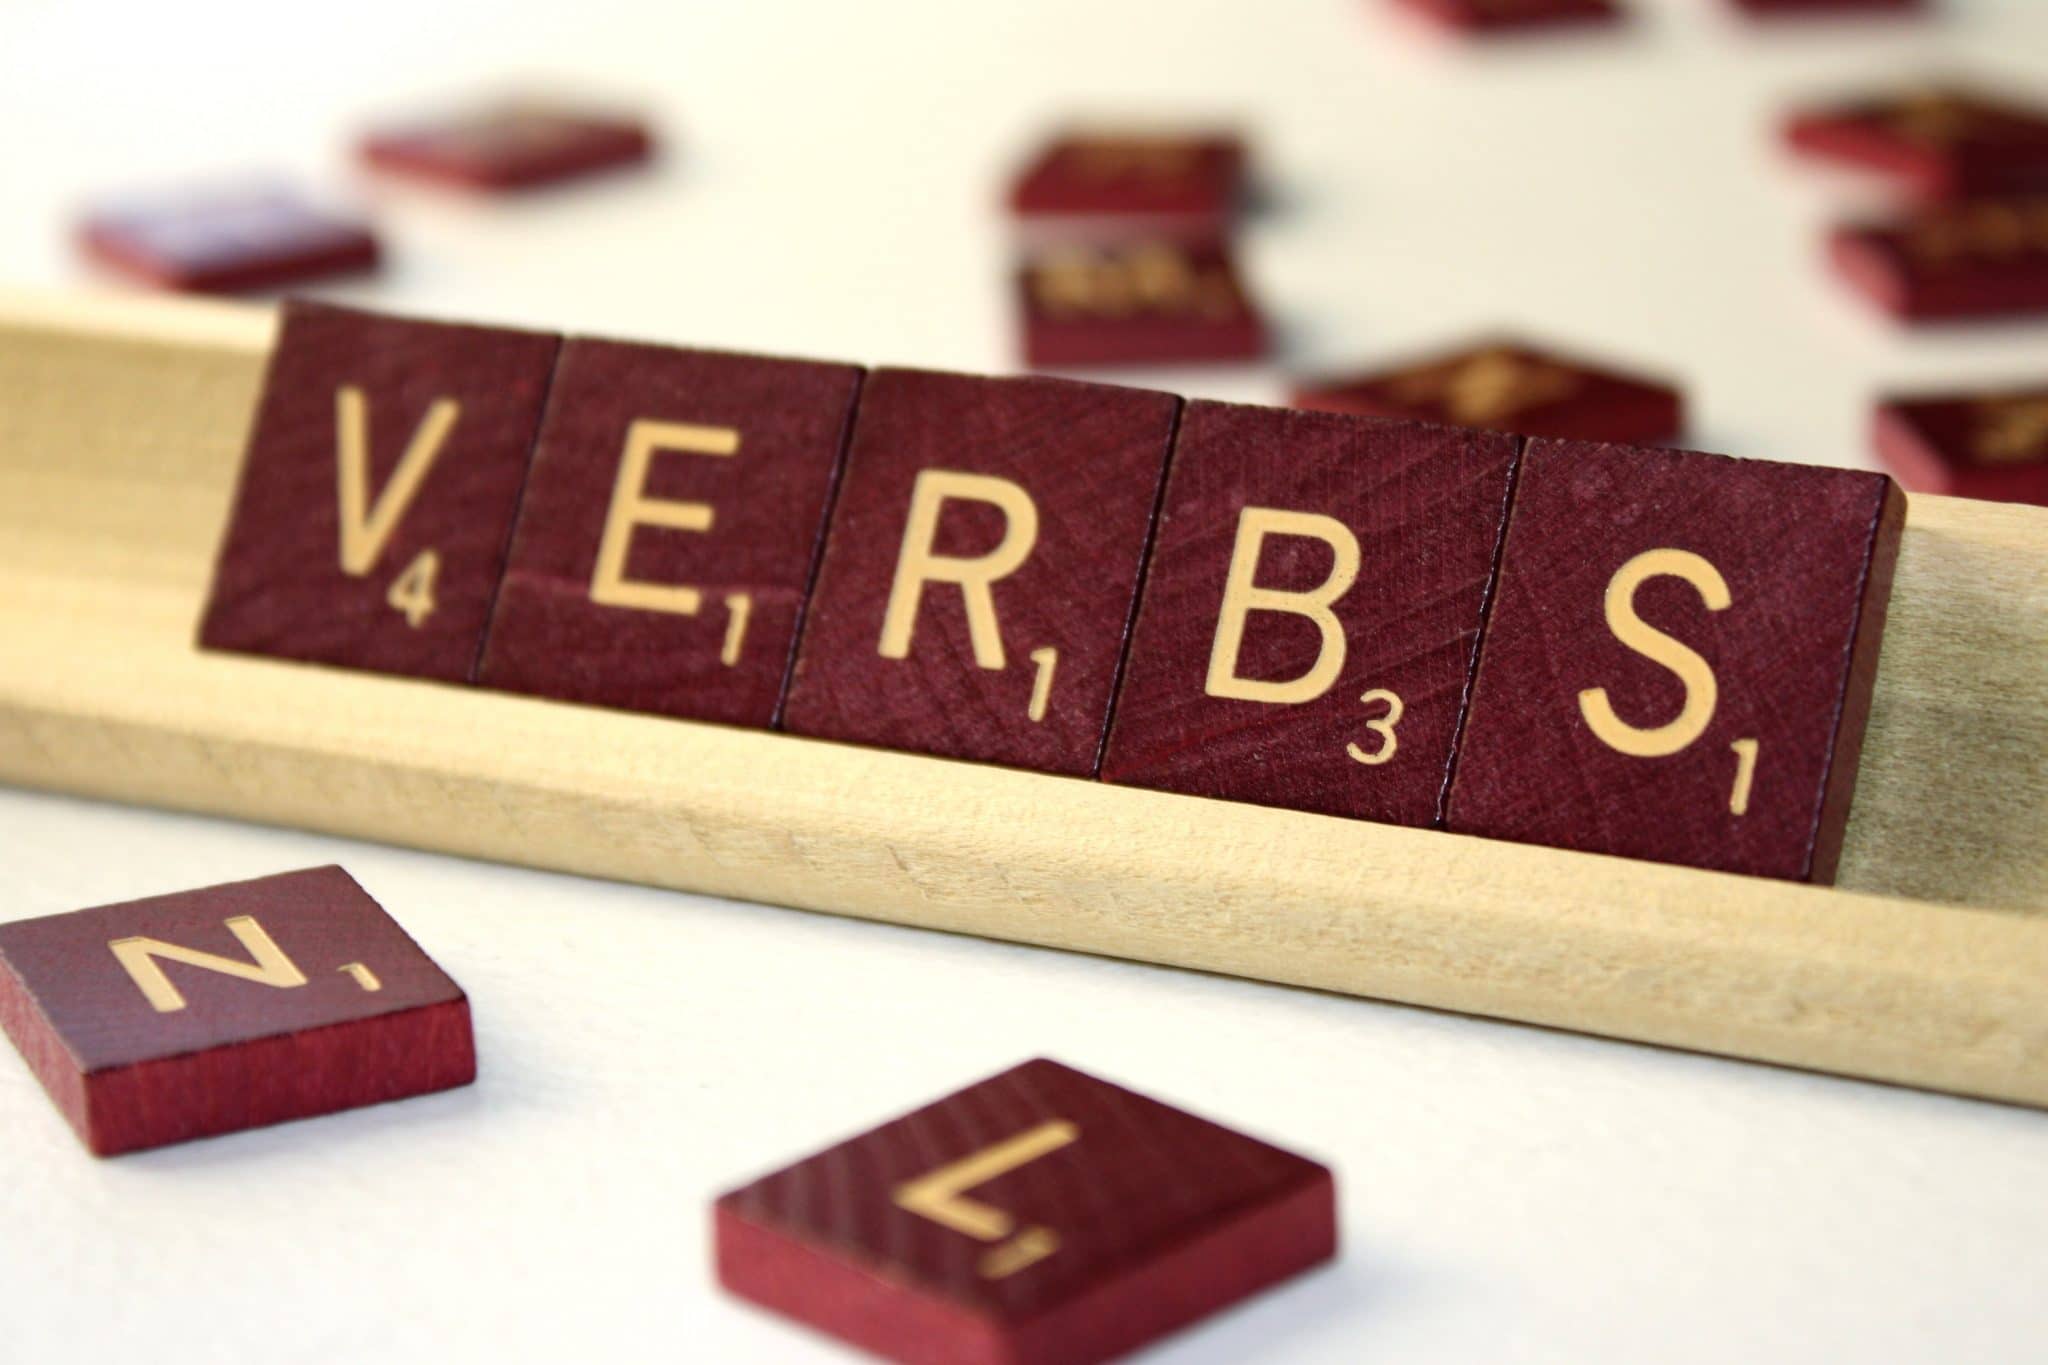 Verbos mais usados em inglês: Saiba quais são